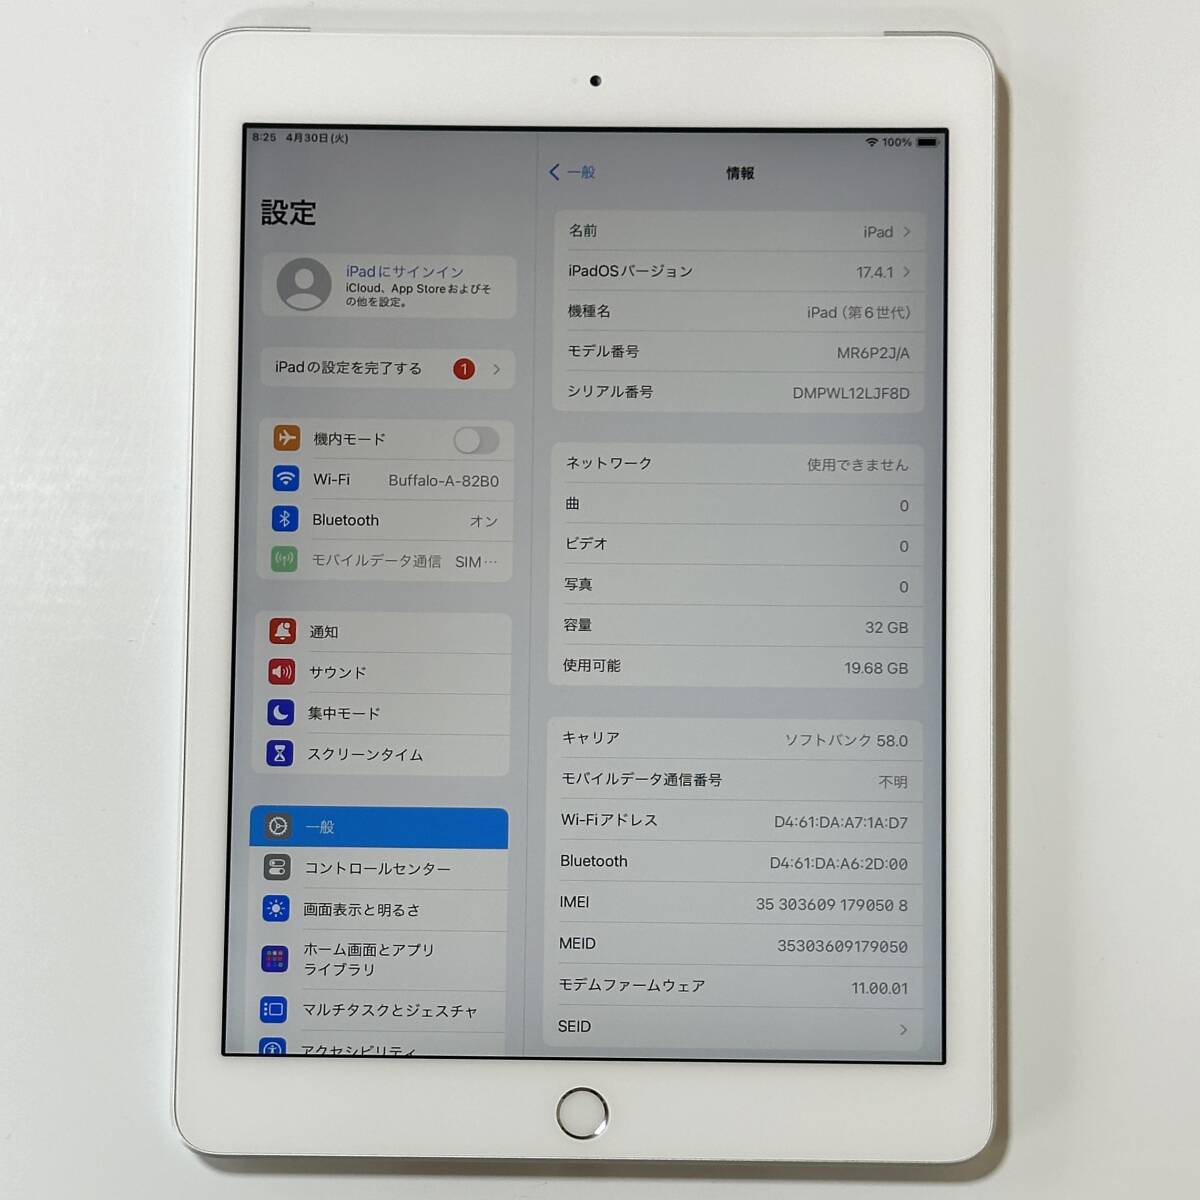 Apple SIMフリー iPad (第6世代) シルバー 32GB MR6P2J/A Wi-Fi+Cellular アクティベーションロック解除済_画像2